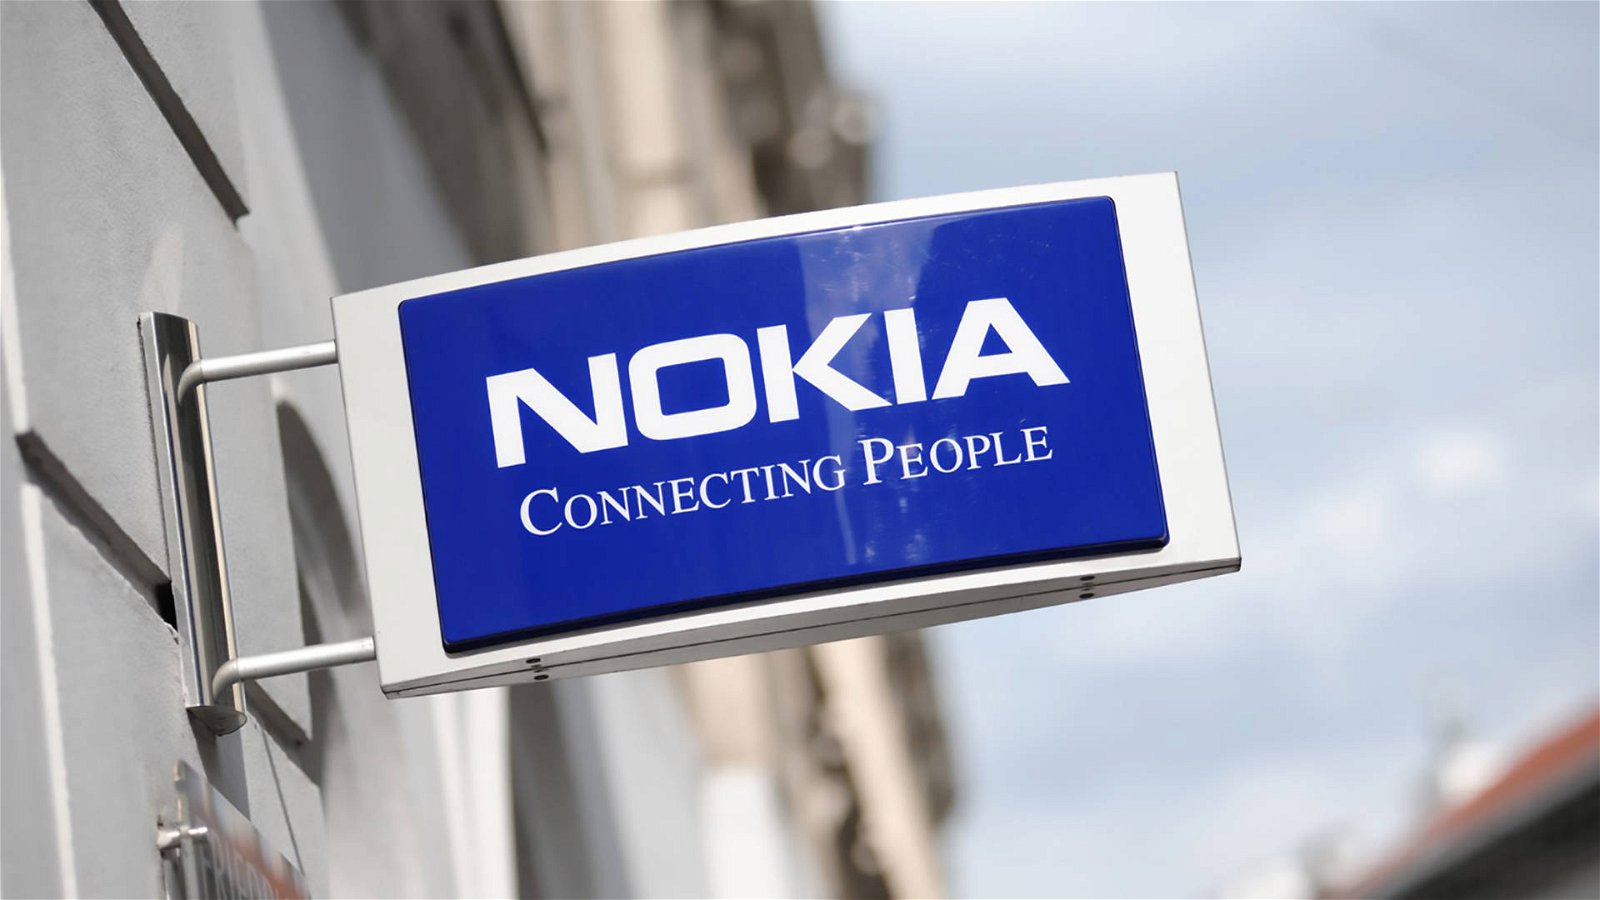 Immagine di Nokia, smartphone sotto inchiesta in Finlandia. Inviate informazioni in Cina?